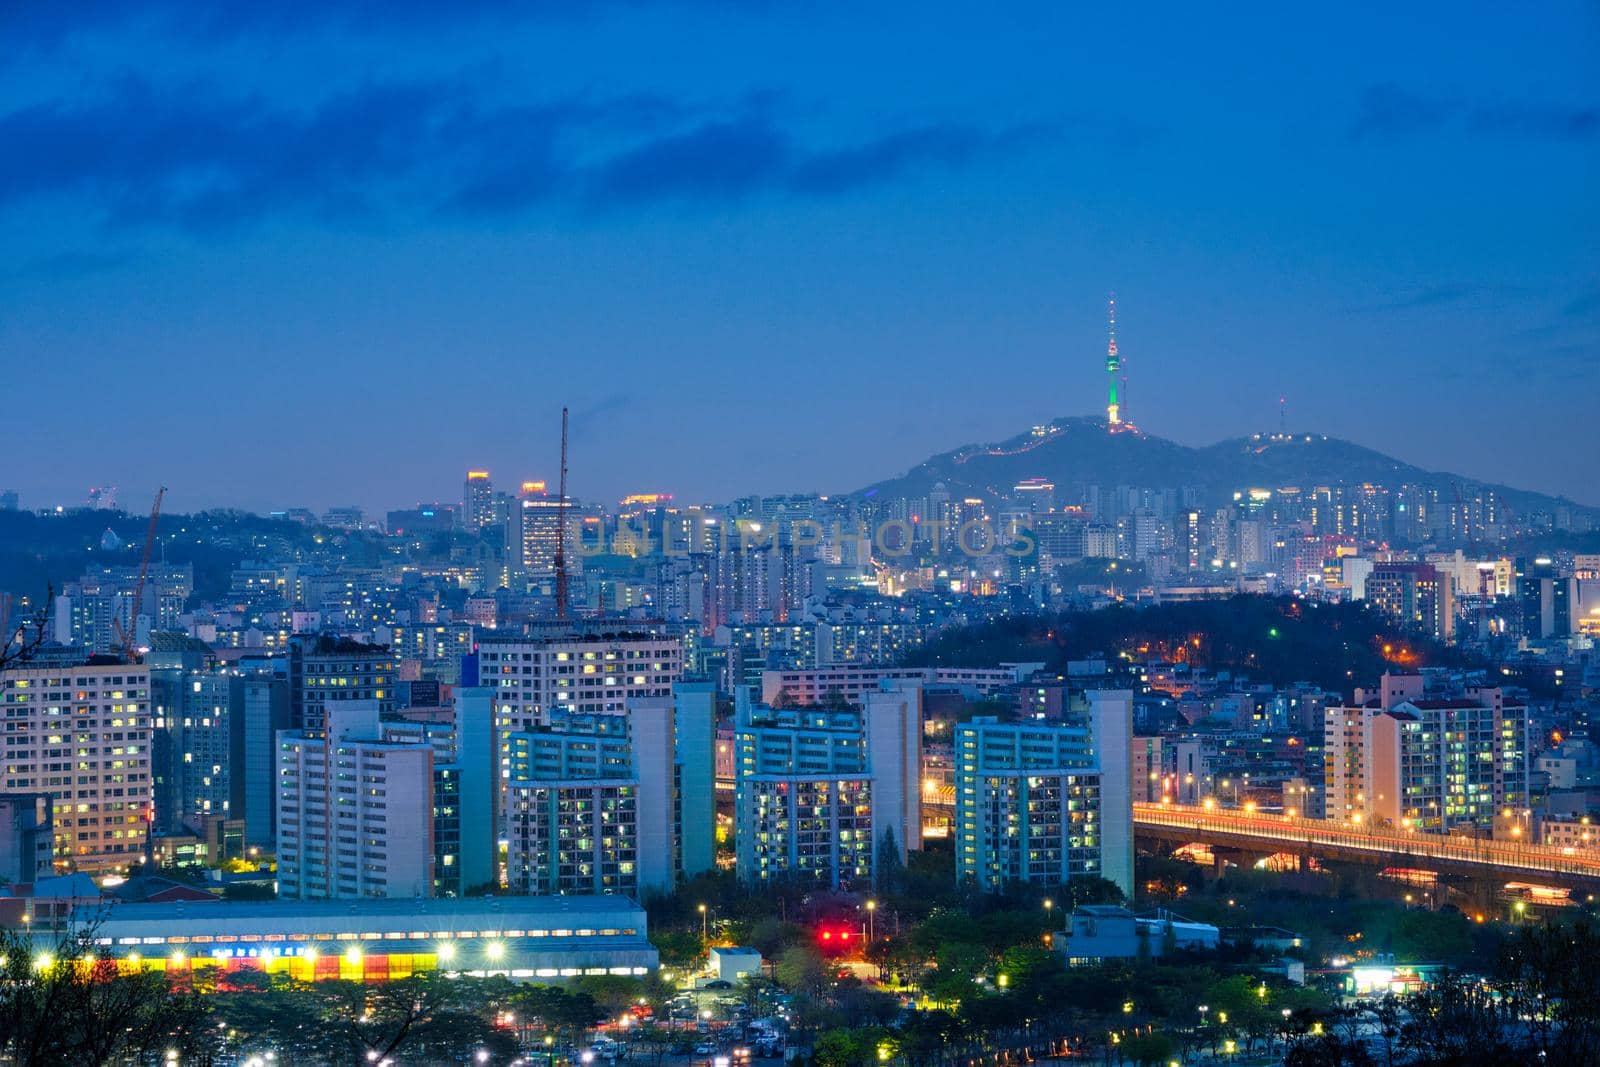 Seoul night view, South Korea by dimol